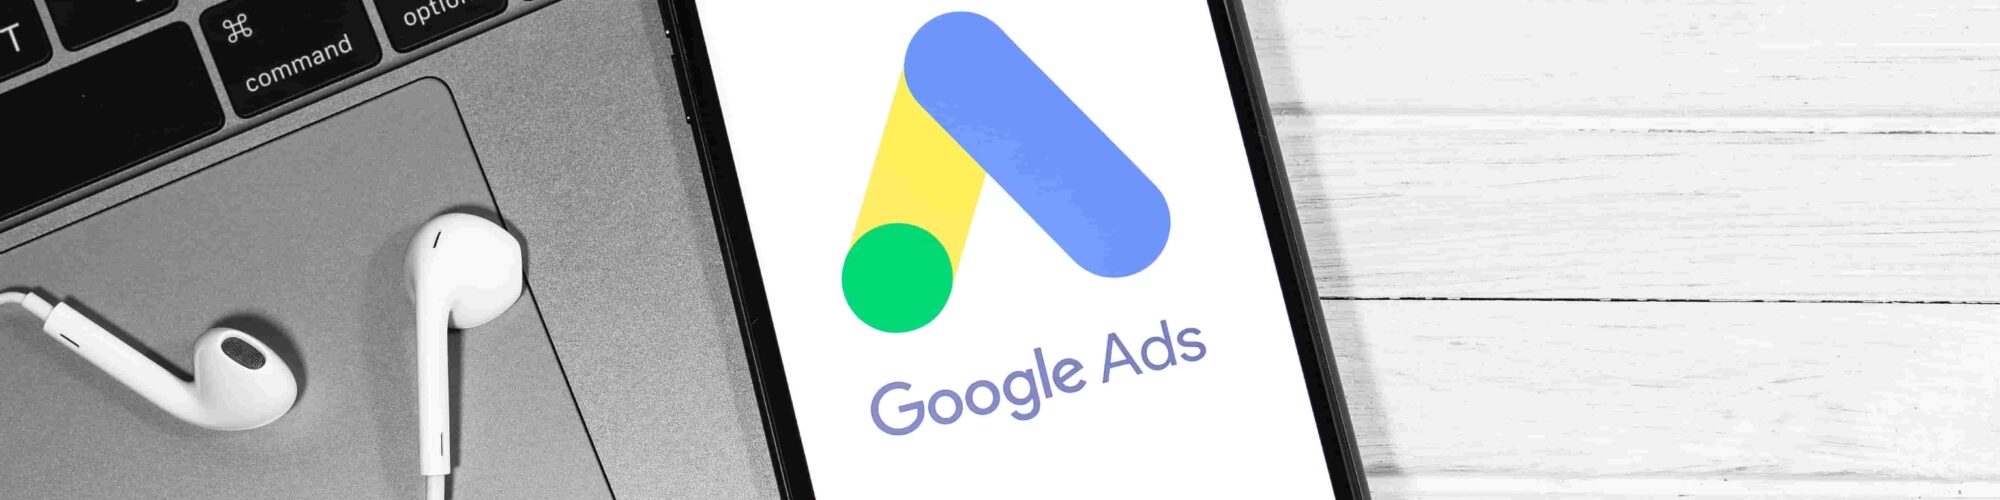 Google Ads (Adwords) - na czym polega i jakie daje korzyści?